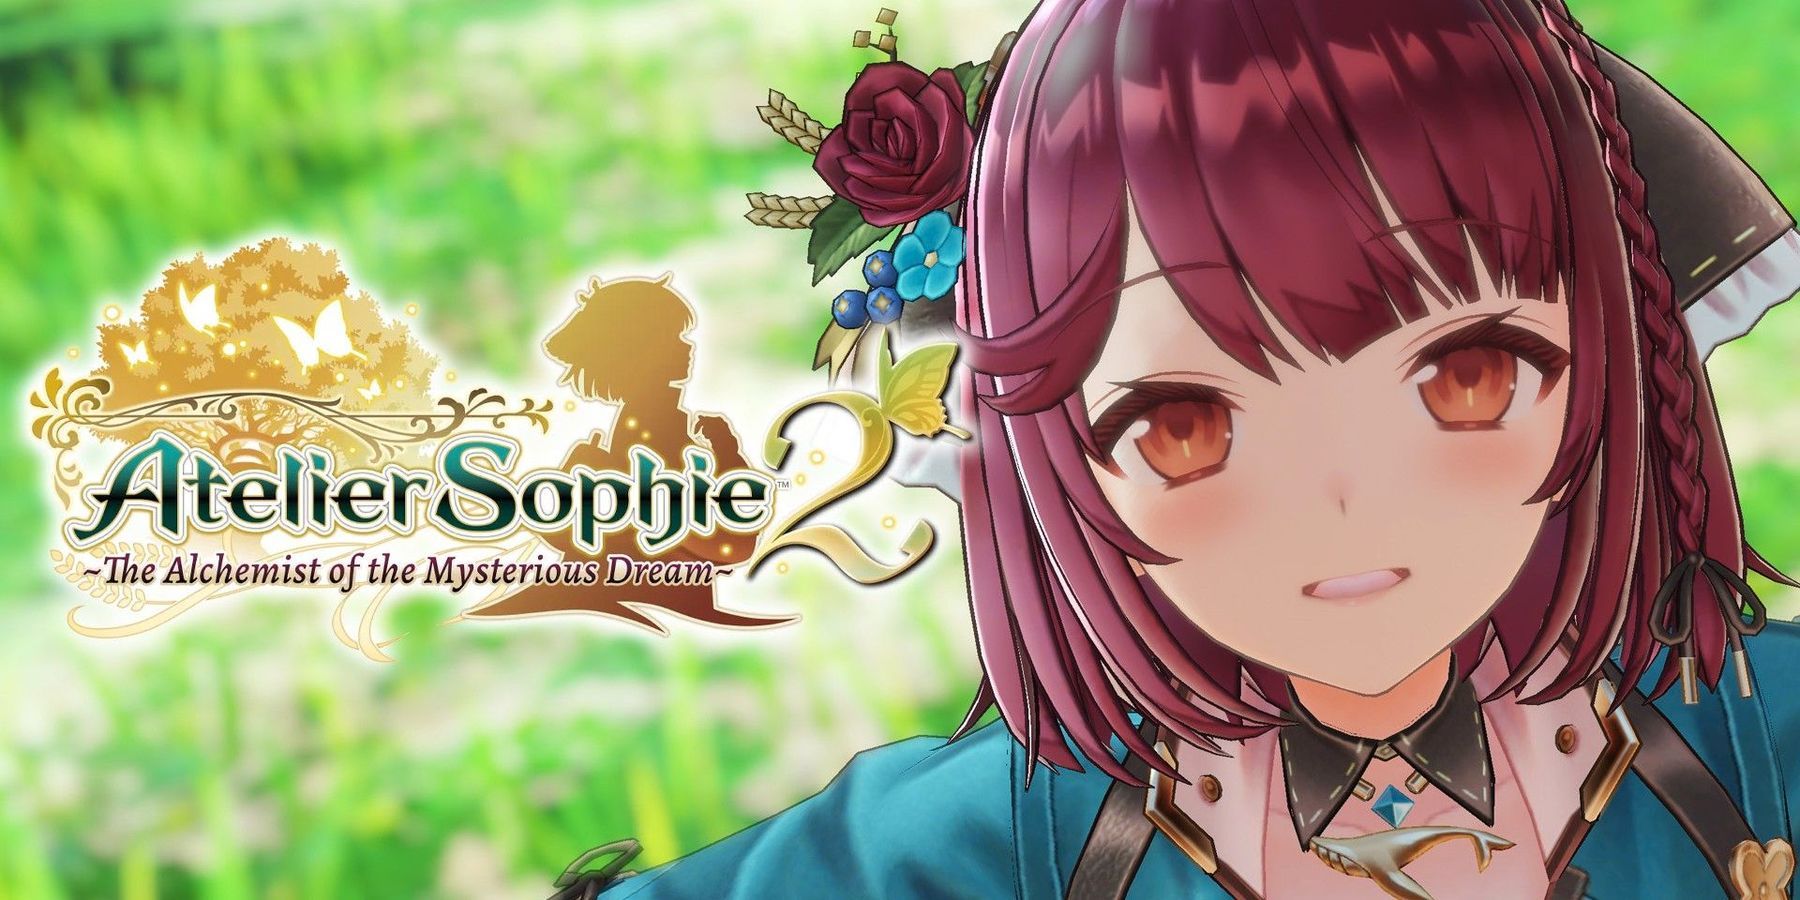 Atelier Sophie 2 annunciato ufficialmente da Koei Tecmo con l’uscita di febbraio 2022